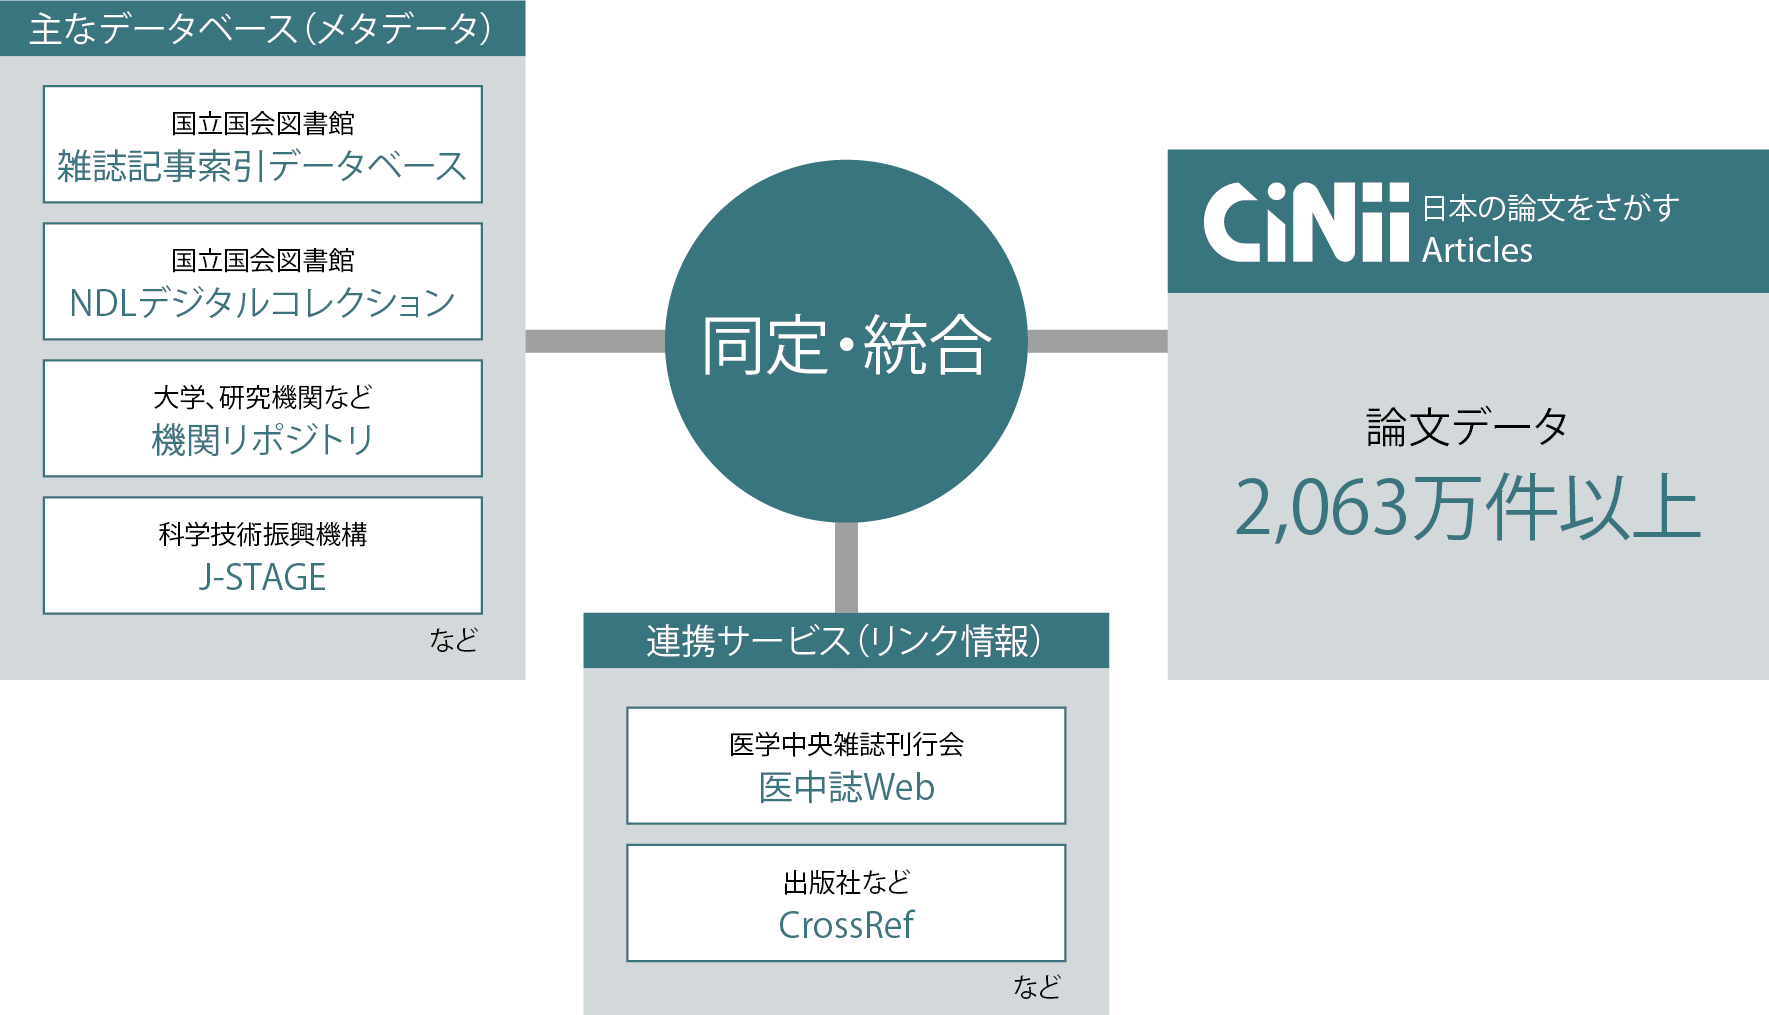 CiNiiの全体図（概念図）